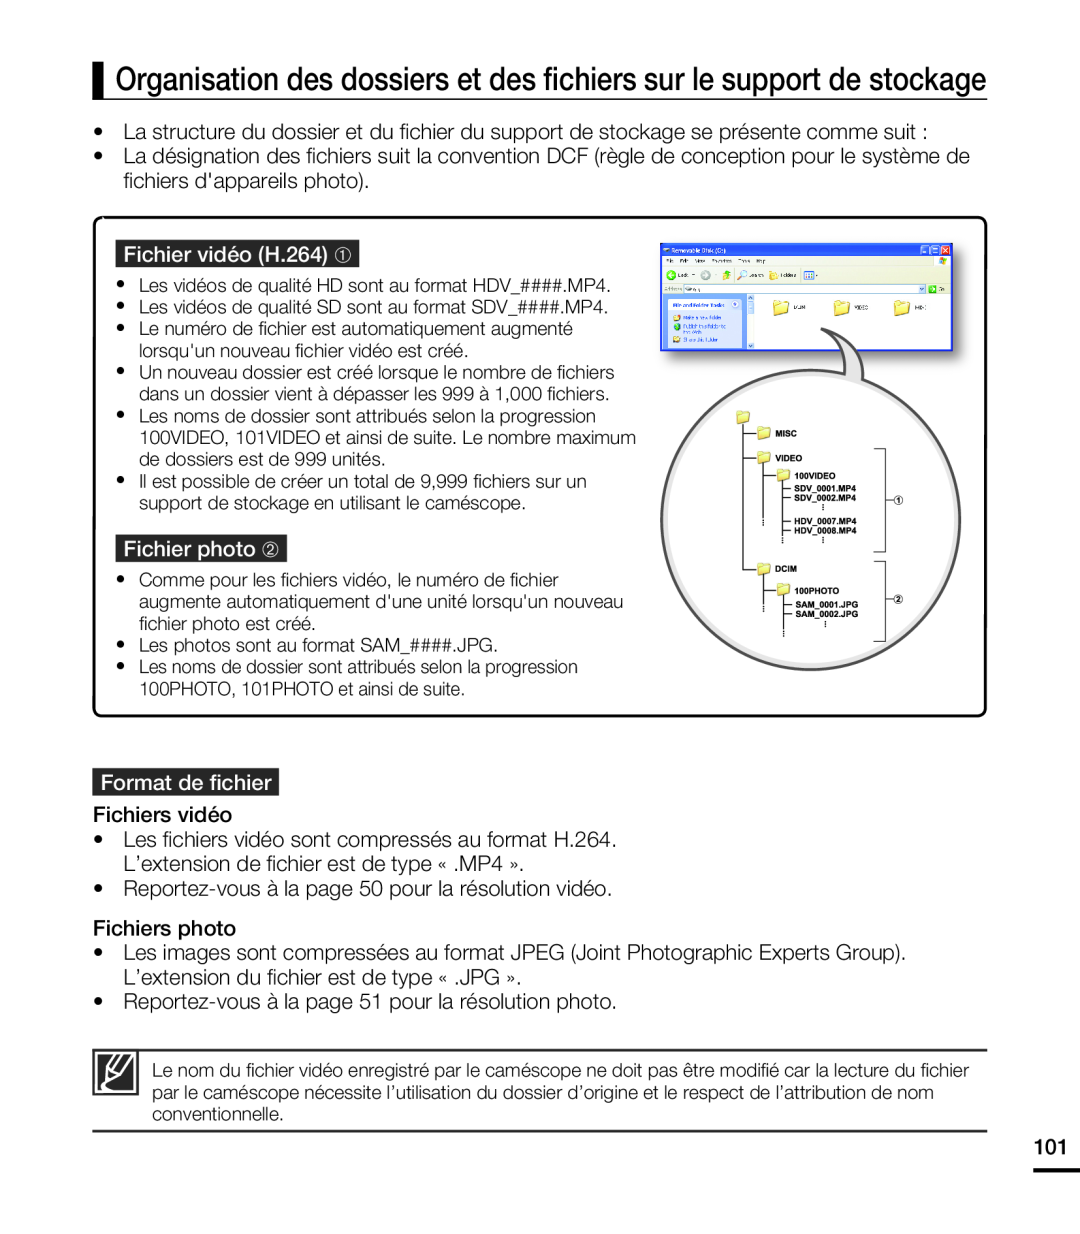 Samsung HMX-T10BP/EDC manual Organisation des dossiers et des ﬁchiers sur le support de stockage, Fichier vidéo H.264 ➀ 